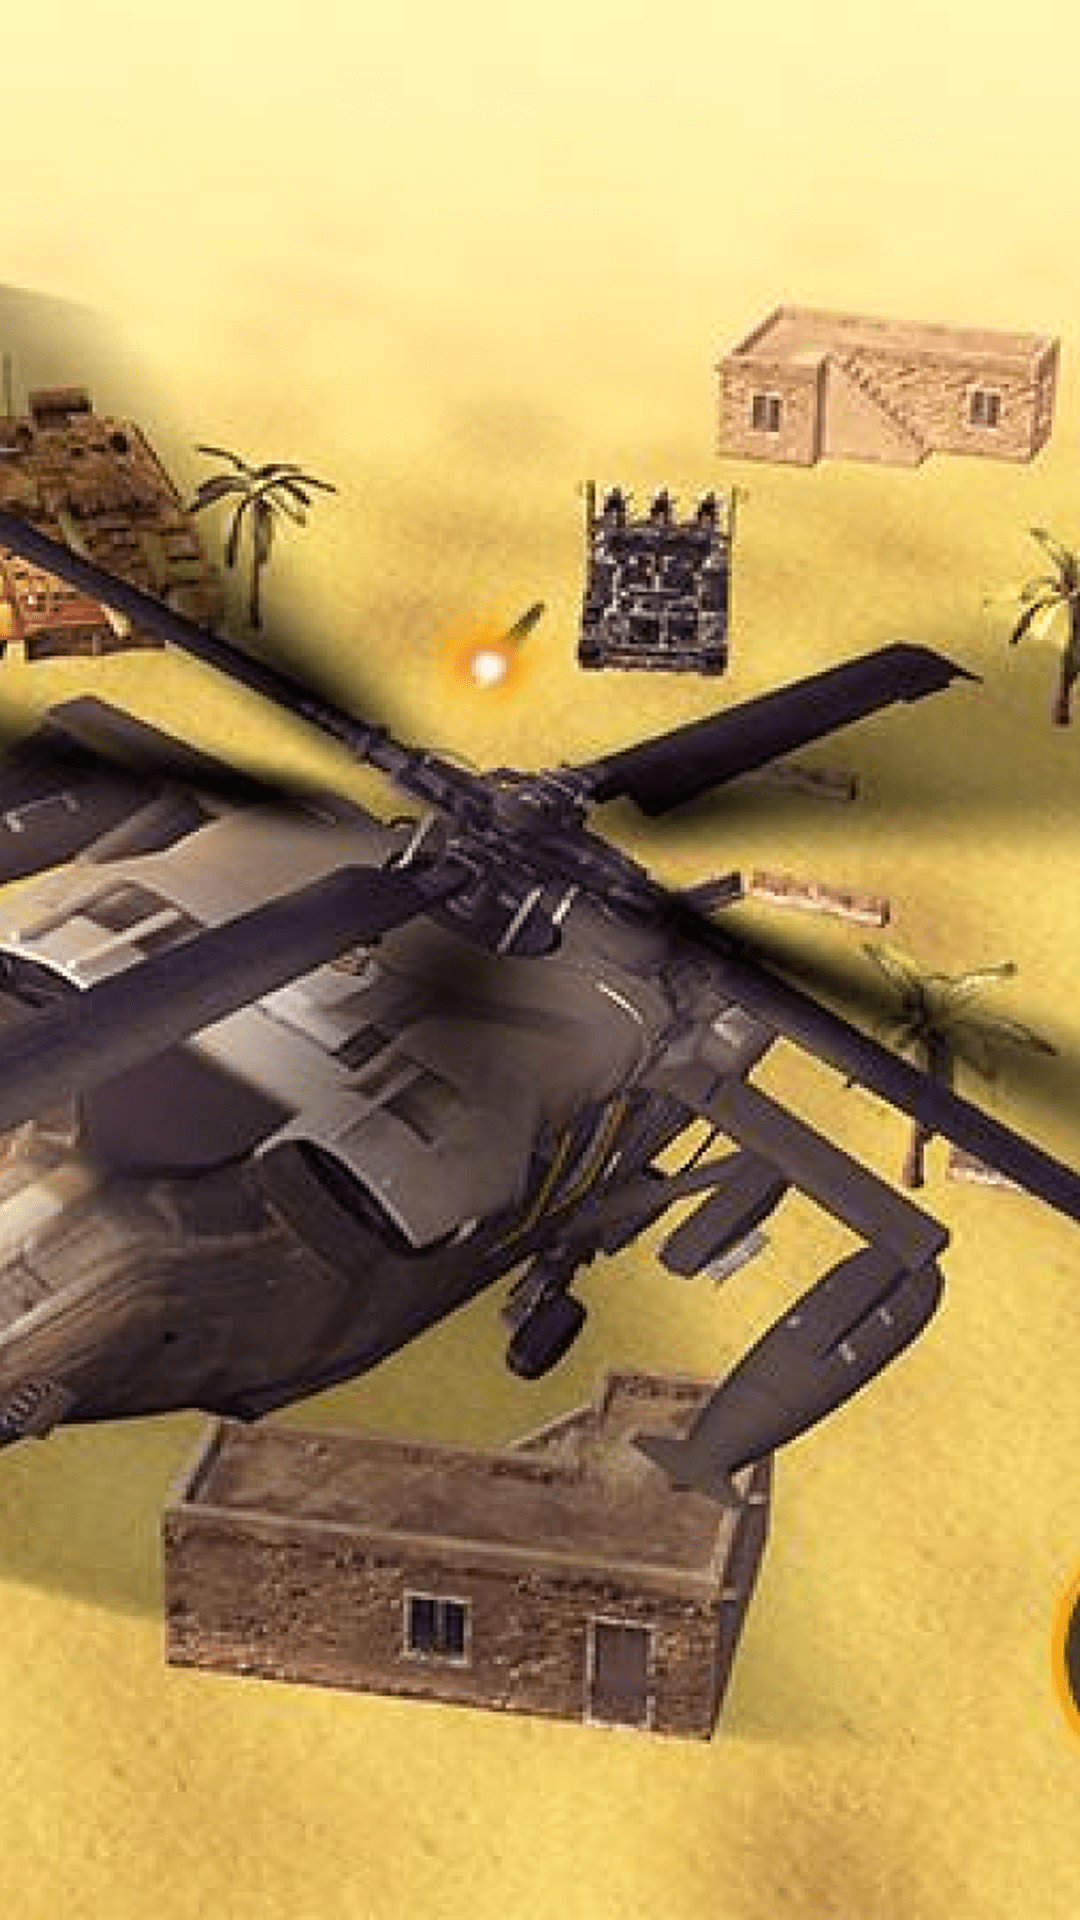 黑鹰武装直升机升级版-黑鹰武装直升机安卓版下载 v1.3